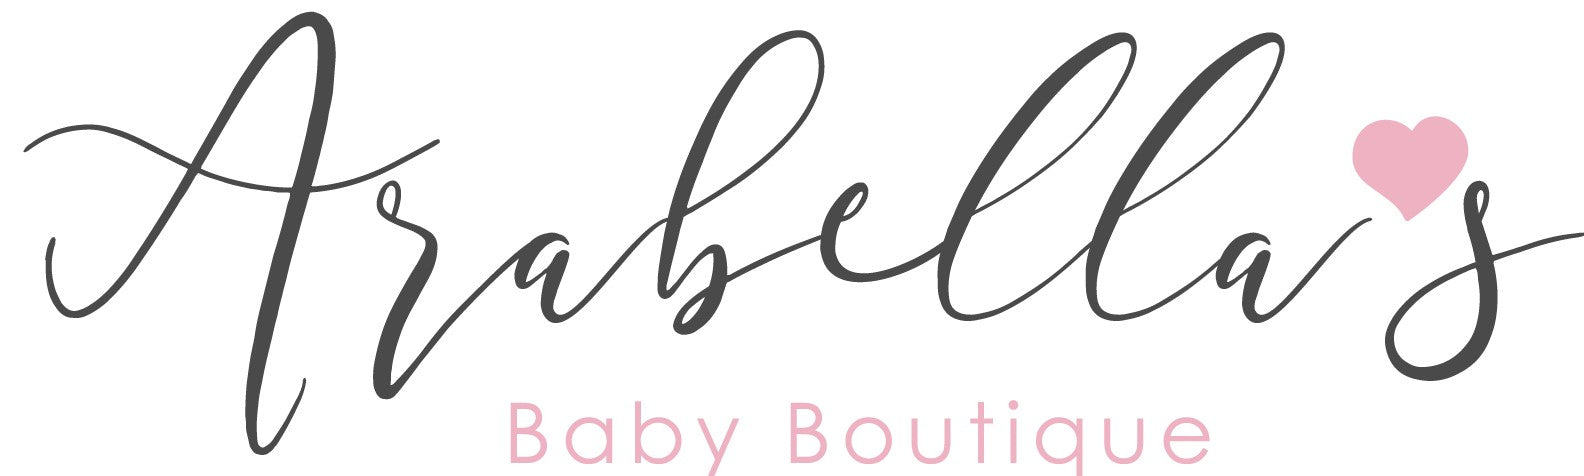 Arabella's Baby Boutique